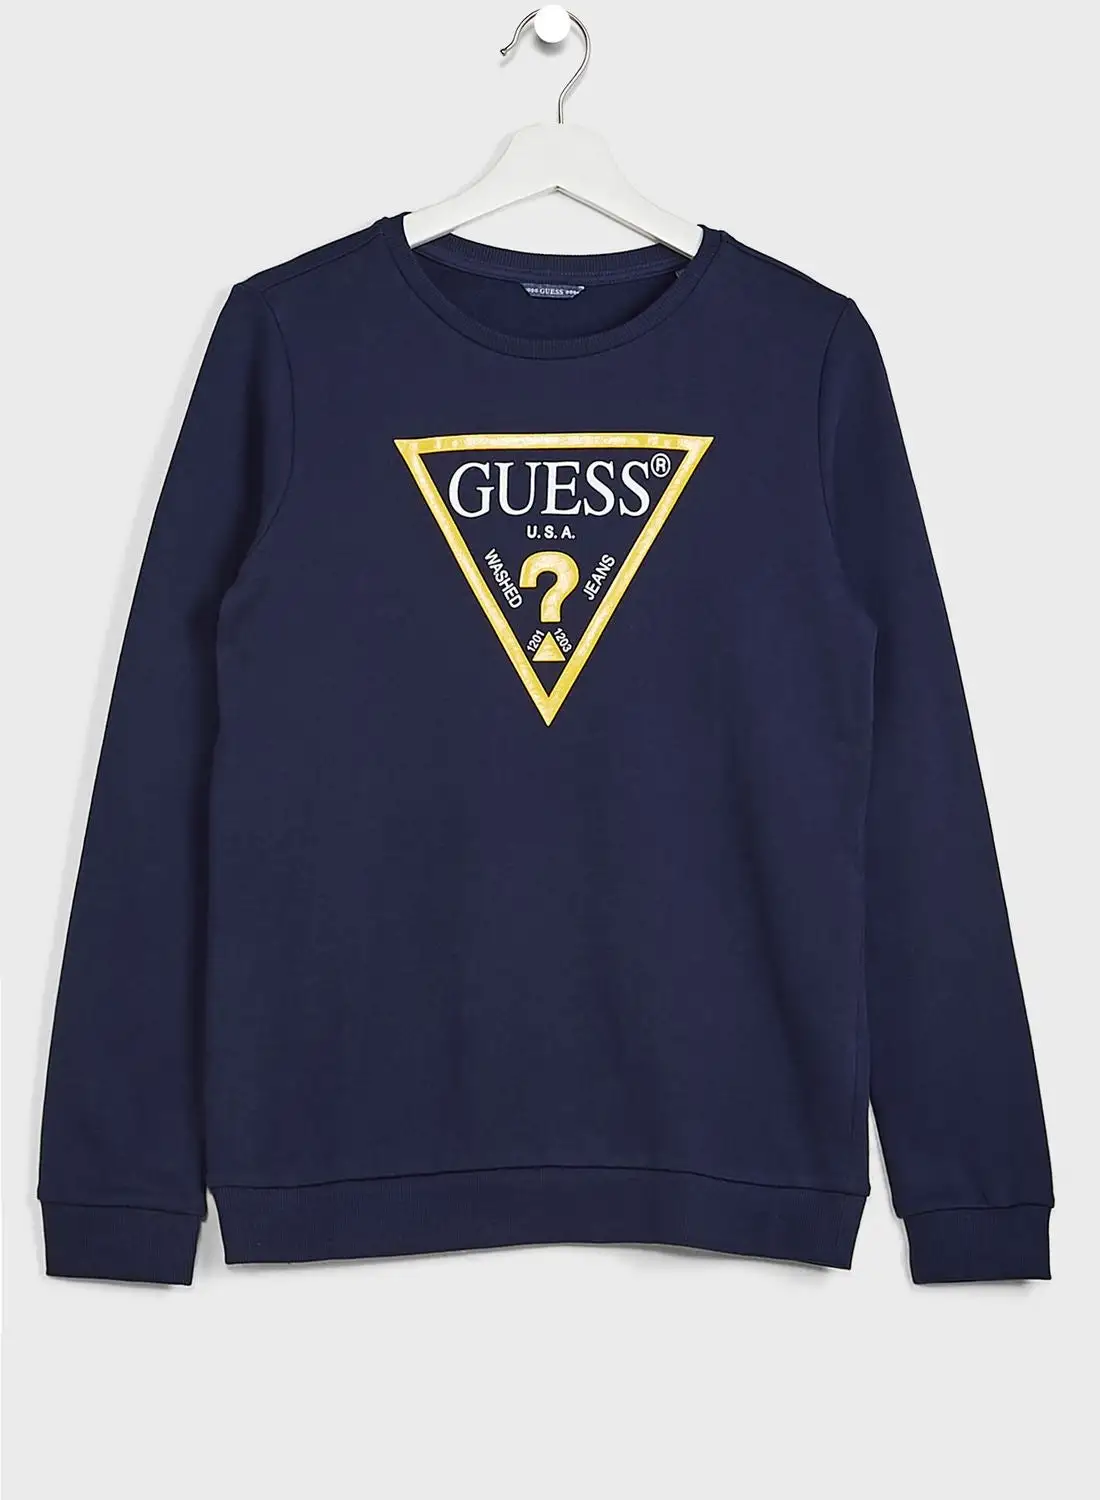 GUESS Youth Logo Sweatshirt